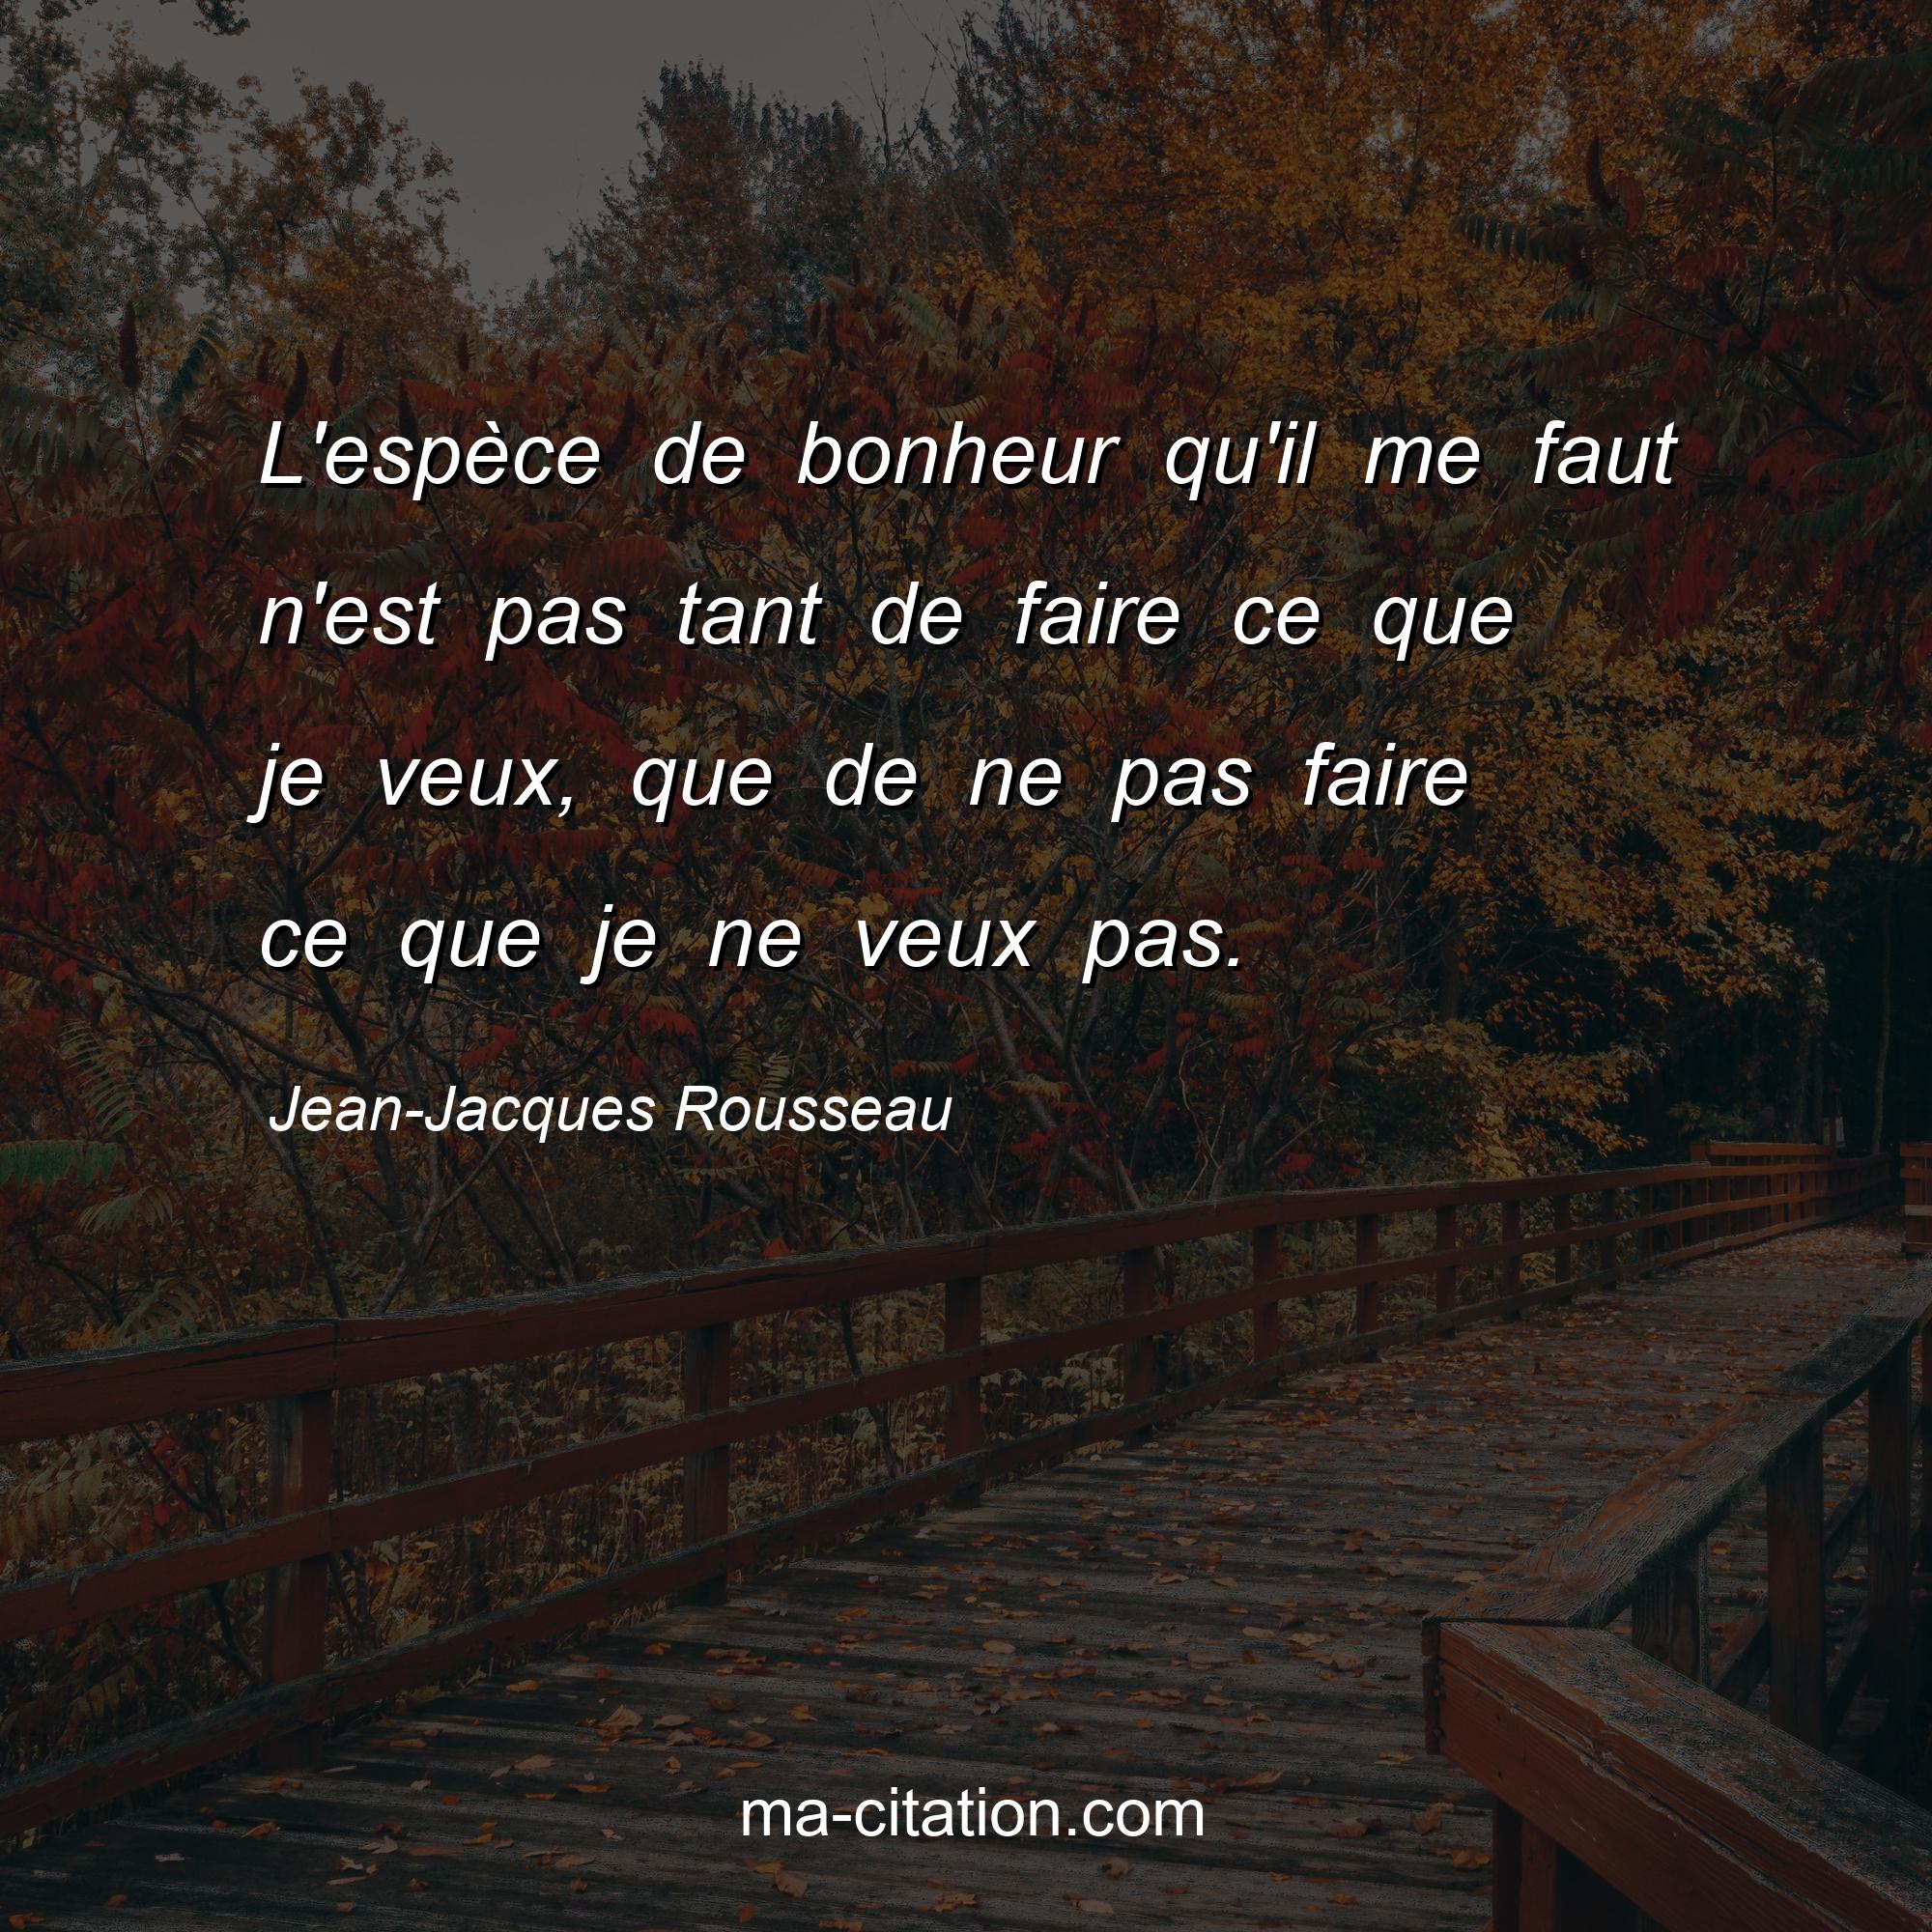 Jean-Jacques Rousseau : L'espèce de bonheur qu'il me faut n'est pas tant de faire ce que je veux, que de ne pas faire ce que je ne veux pas.